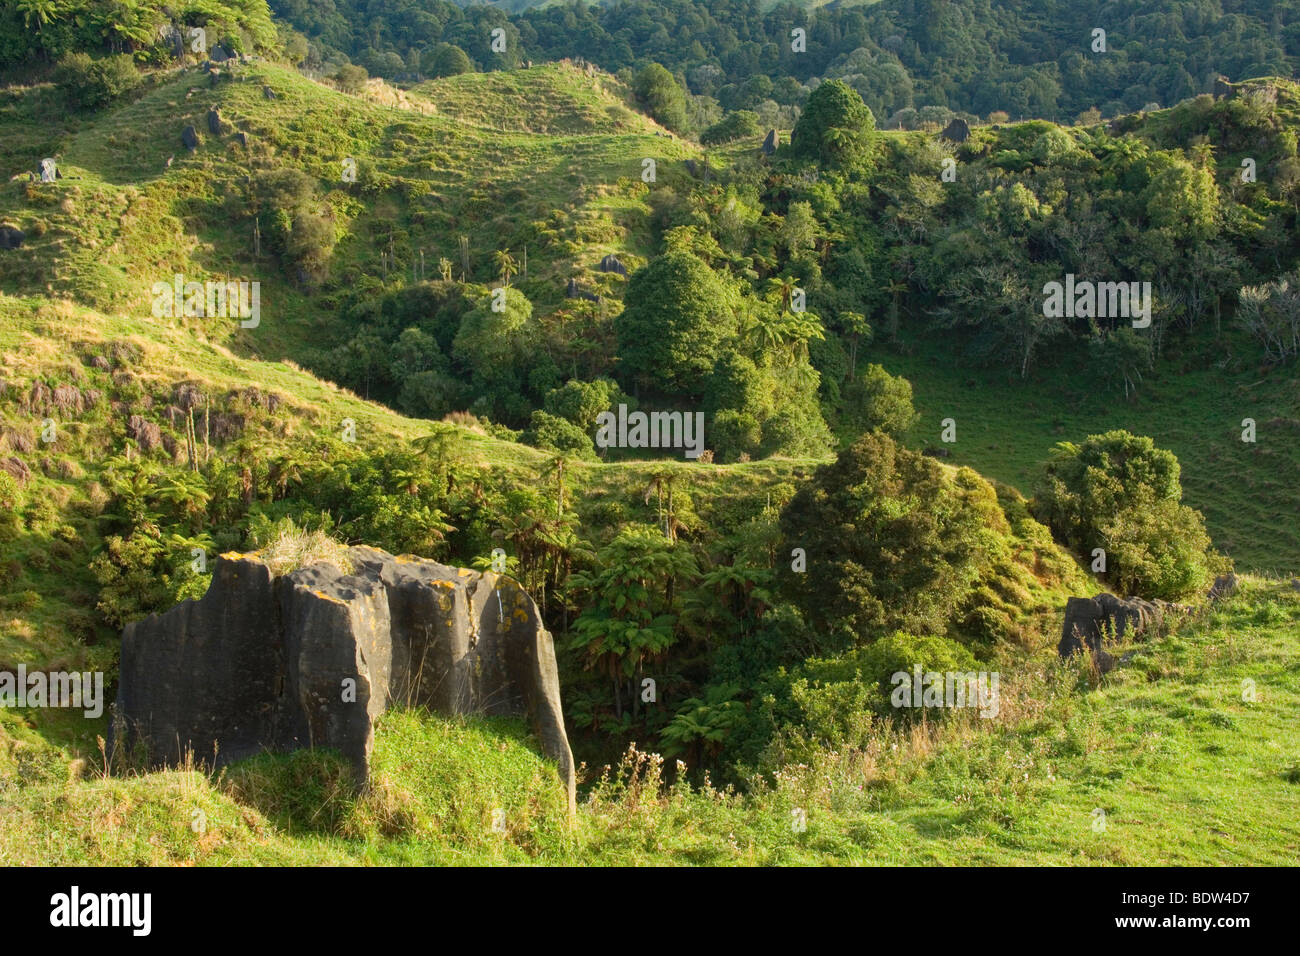 Verdes colinas salpicadas con afloramientos de piedra caliza y barrancos rocosos de los helechos, ubicado en Waitomo, Nueva Zelanda Foto de stock